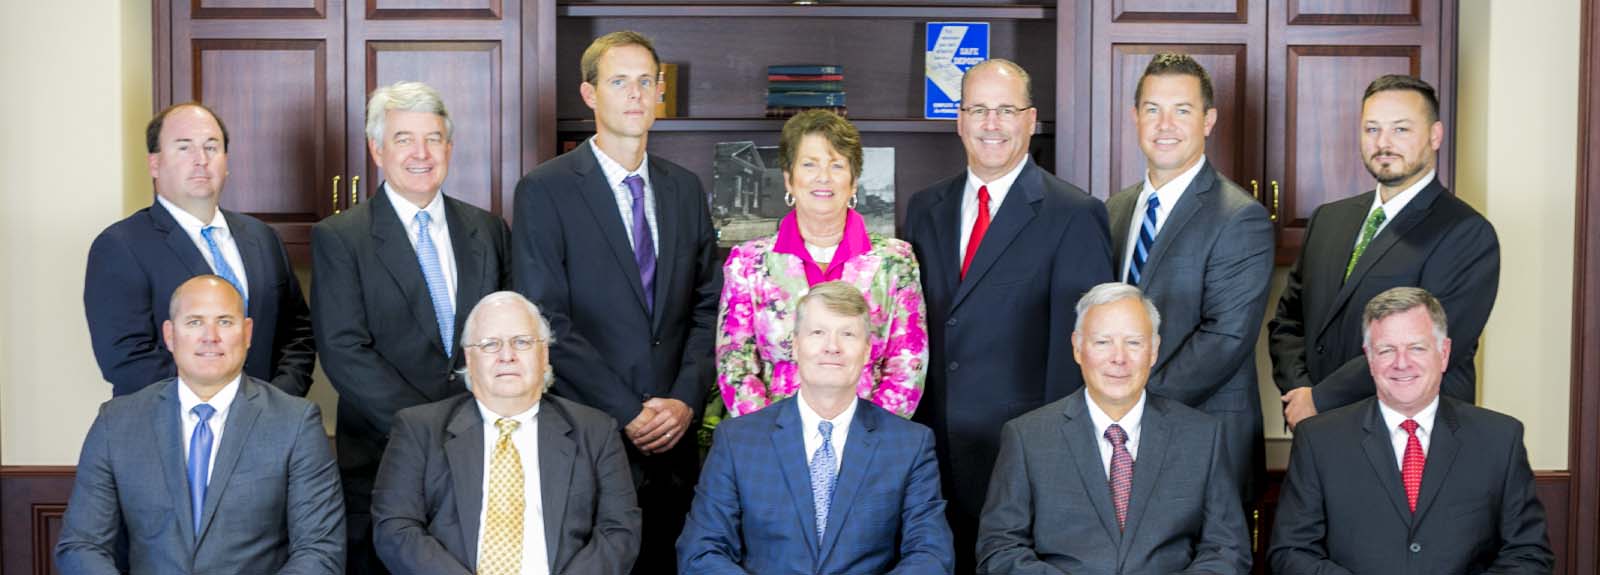 Taylor Bank Board of Directors Group Photo